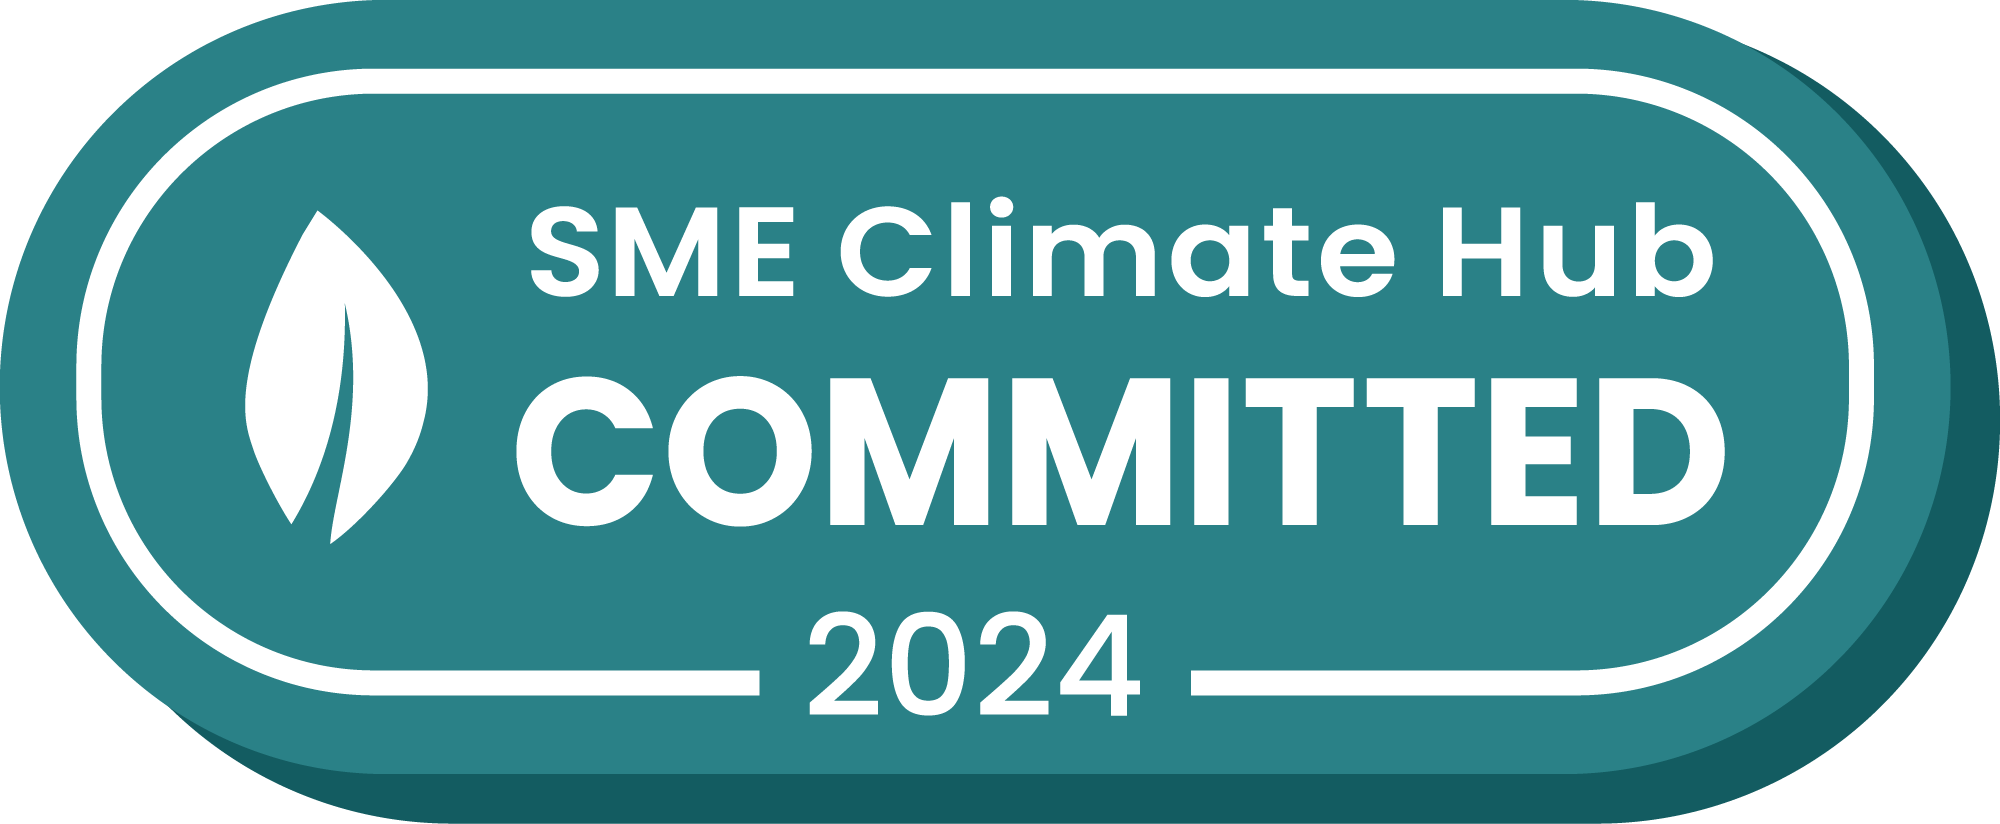 SME Climate Hub, Sustainability